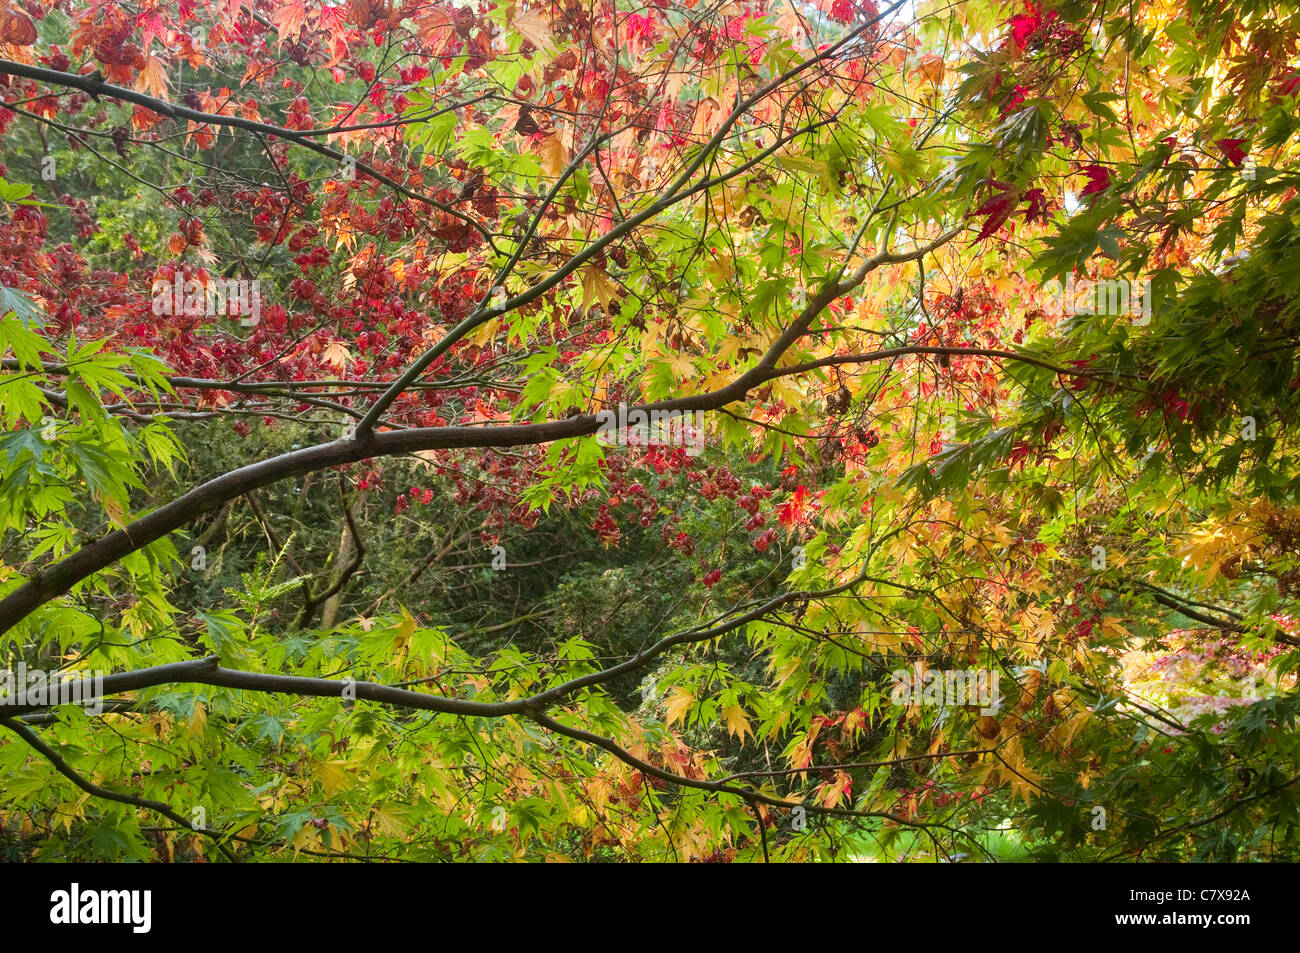 Buntes Herbstlaub - Äste und Zweige des japanischen Ahorne mit einer Mischung der Farben rot, orange und grün. UK Stockfoto